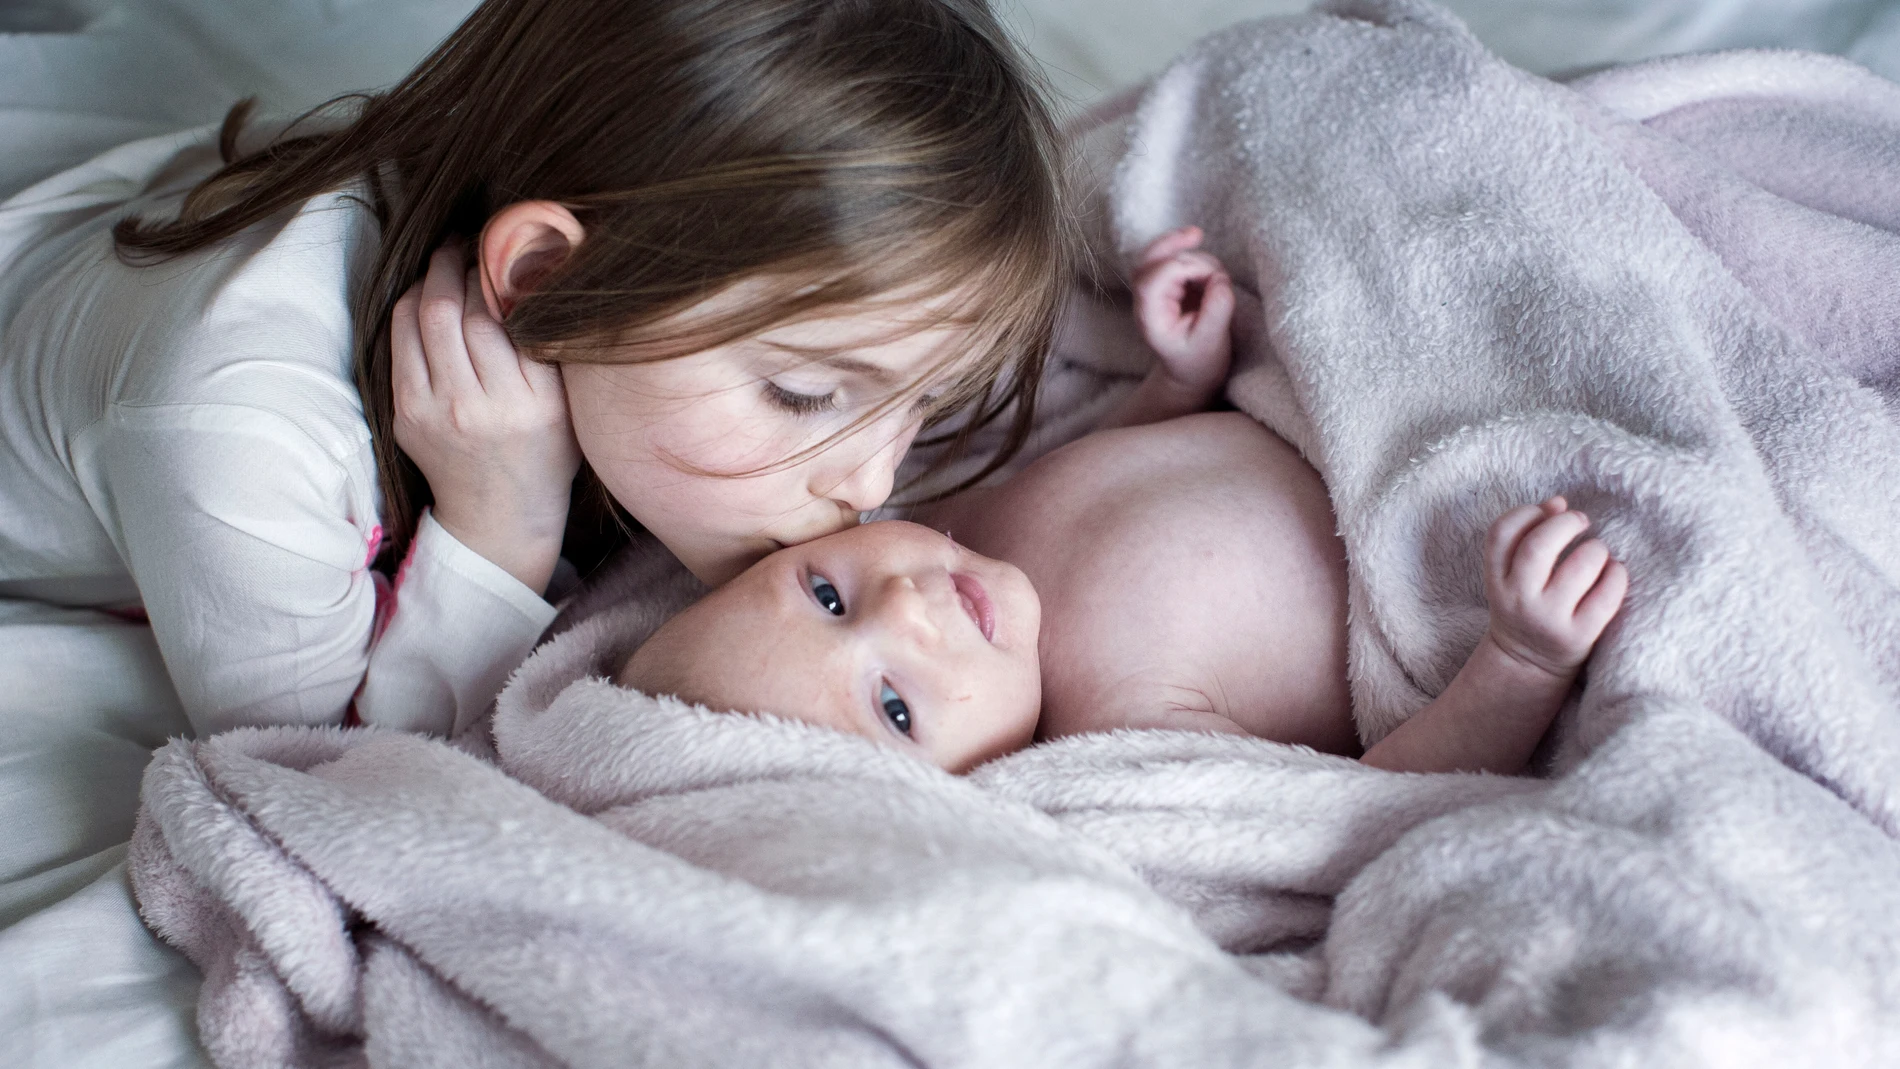 Una niña besa a su hermano recién nacido